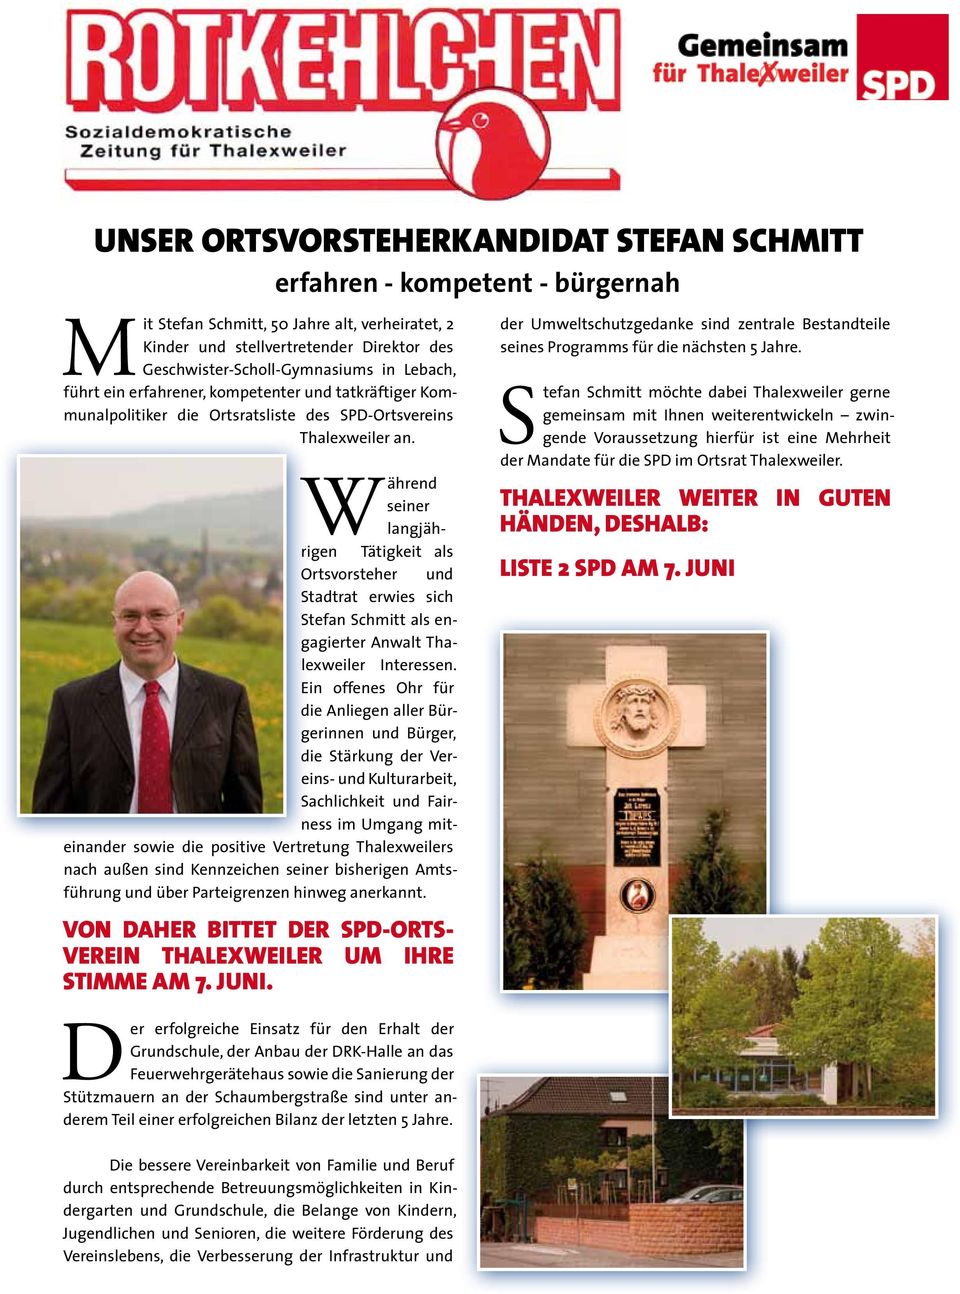 Während seiner langjährigen Tätigkeit als Ortsvorsteher und Stadtrat erwies sich Stefan Schmitt als engagierter Anwalt Thalexweiler Interessen.